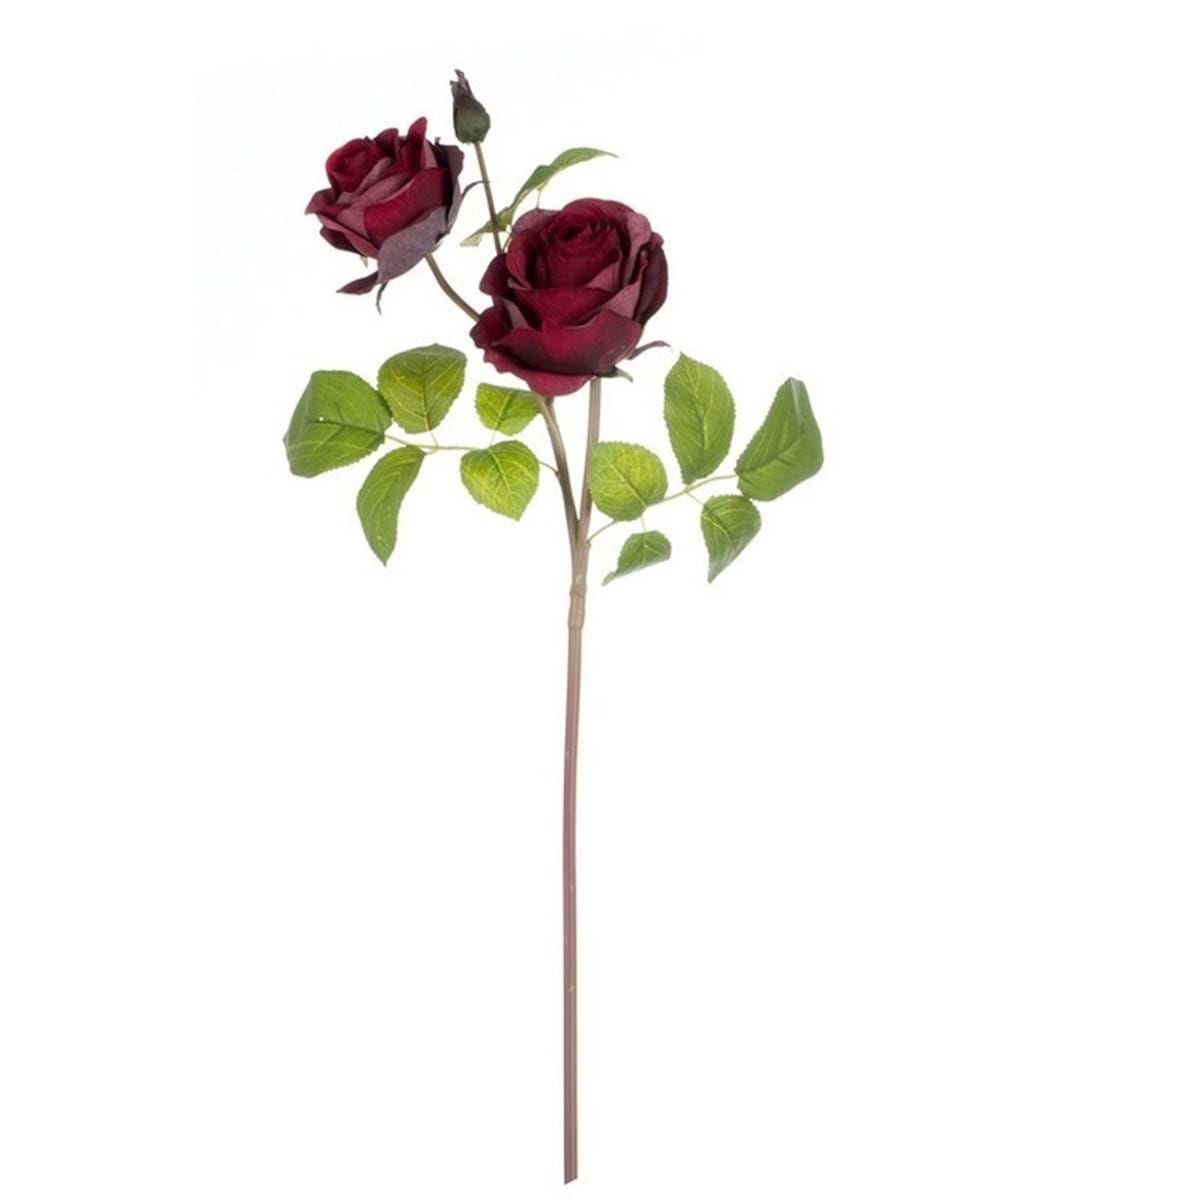 Rosa fiore